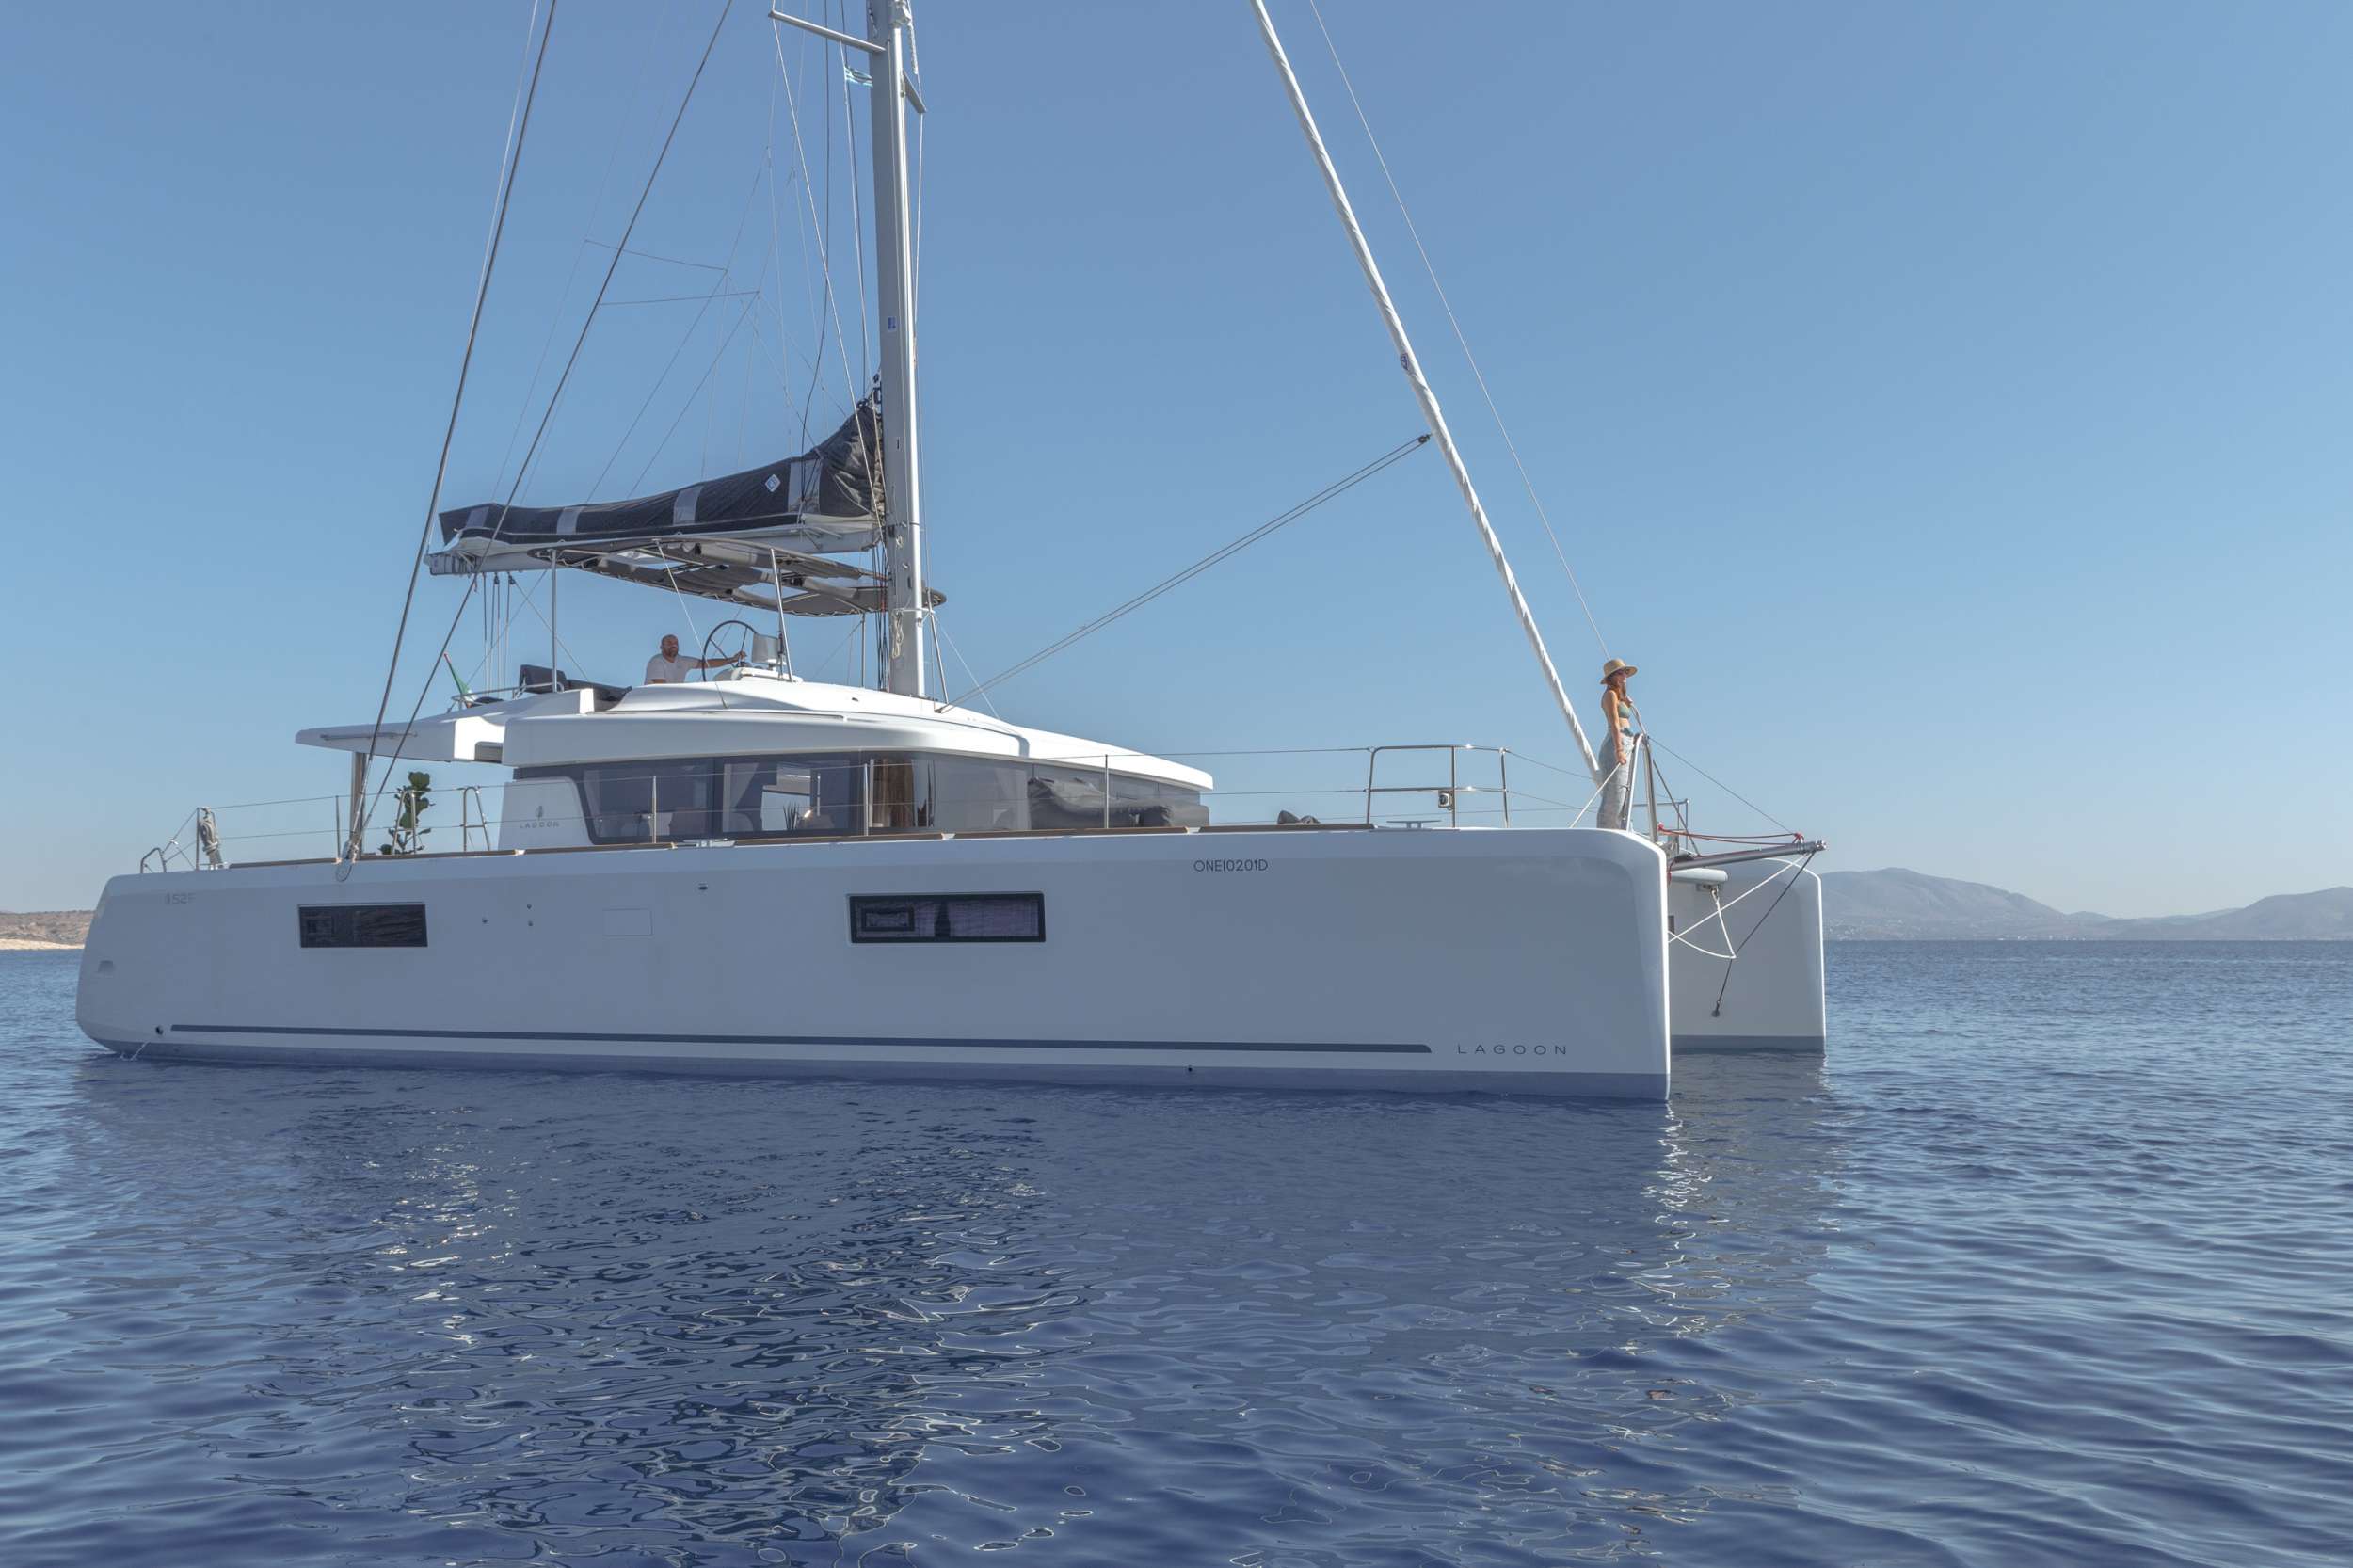 ONEIDA - Yacht Charter Milos & Boat hire in Greece 1